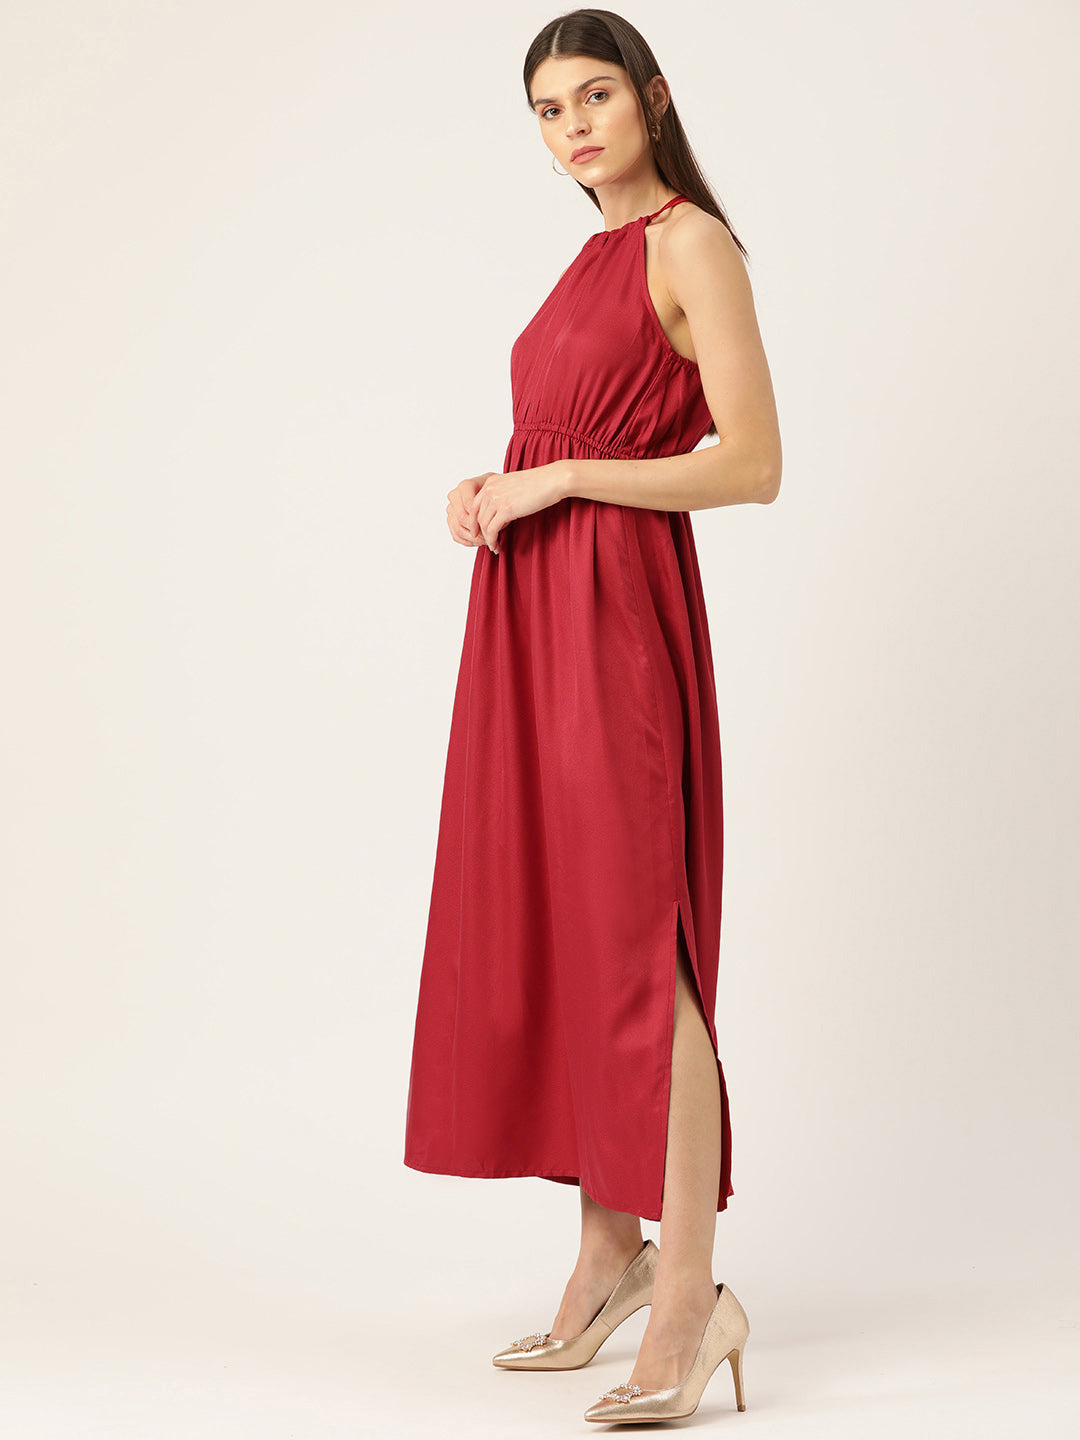 महिलाओं के लिए रस्ट रेड सॉलिड मैक्सी ड्रेस